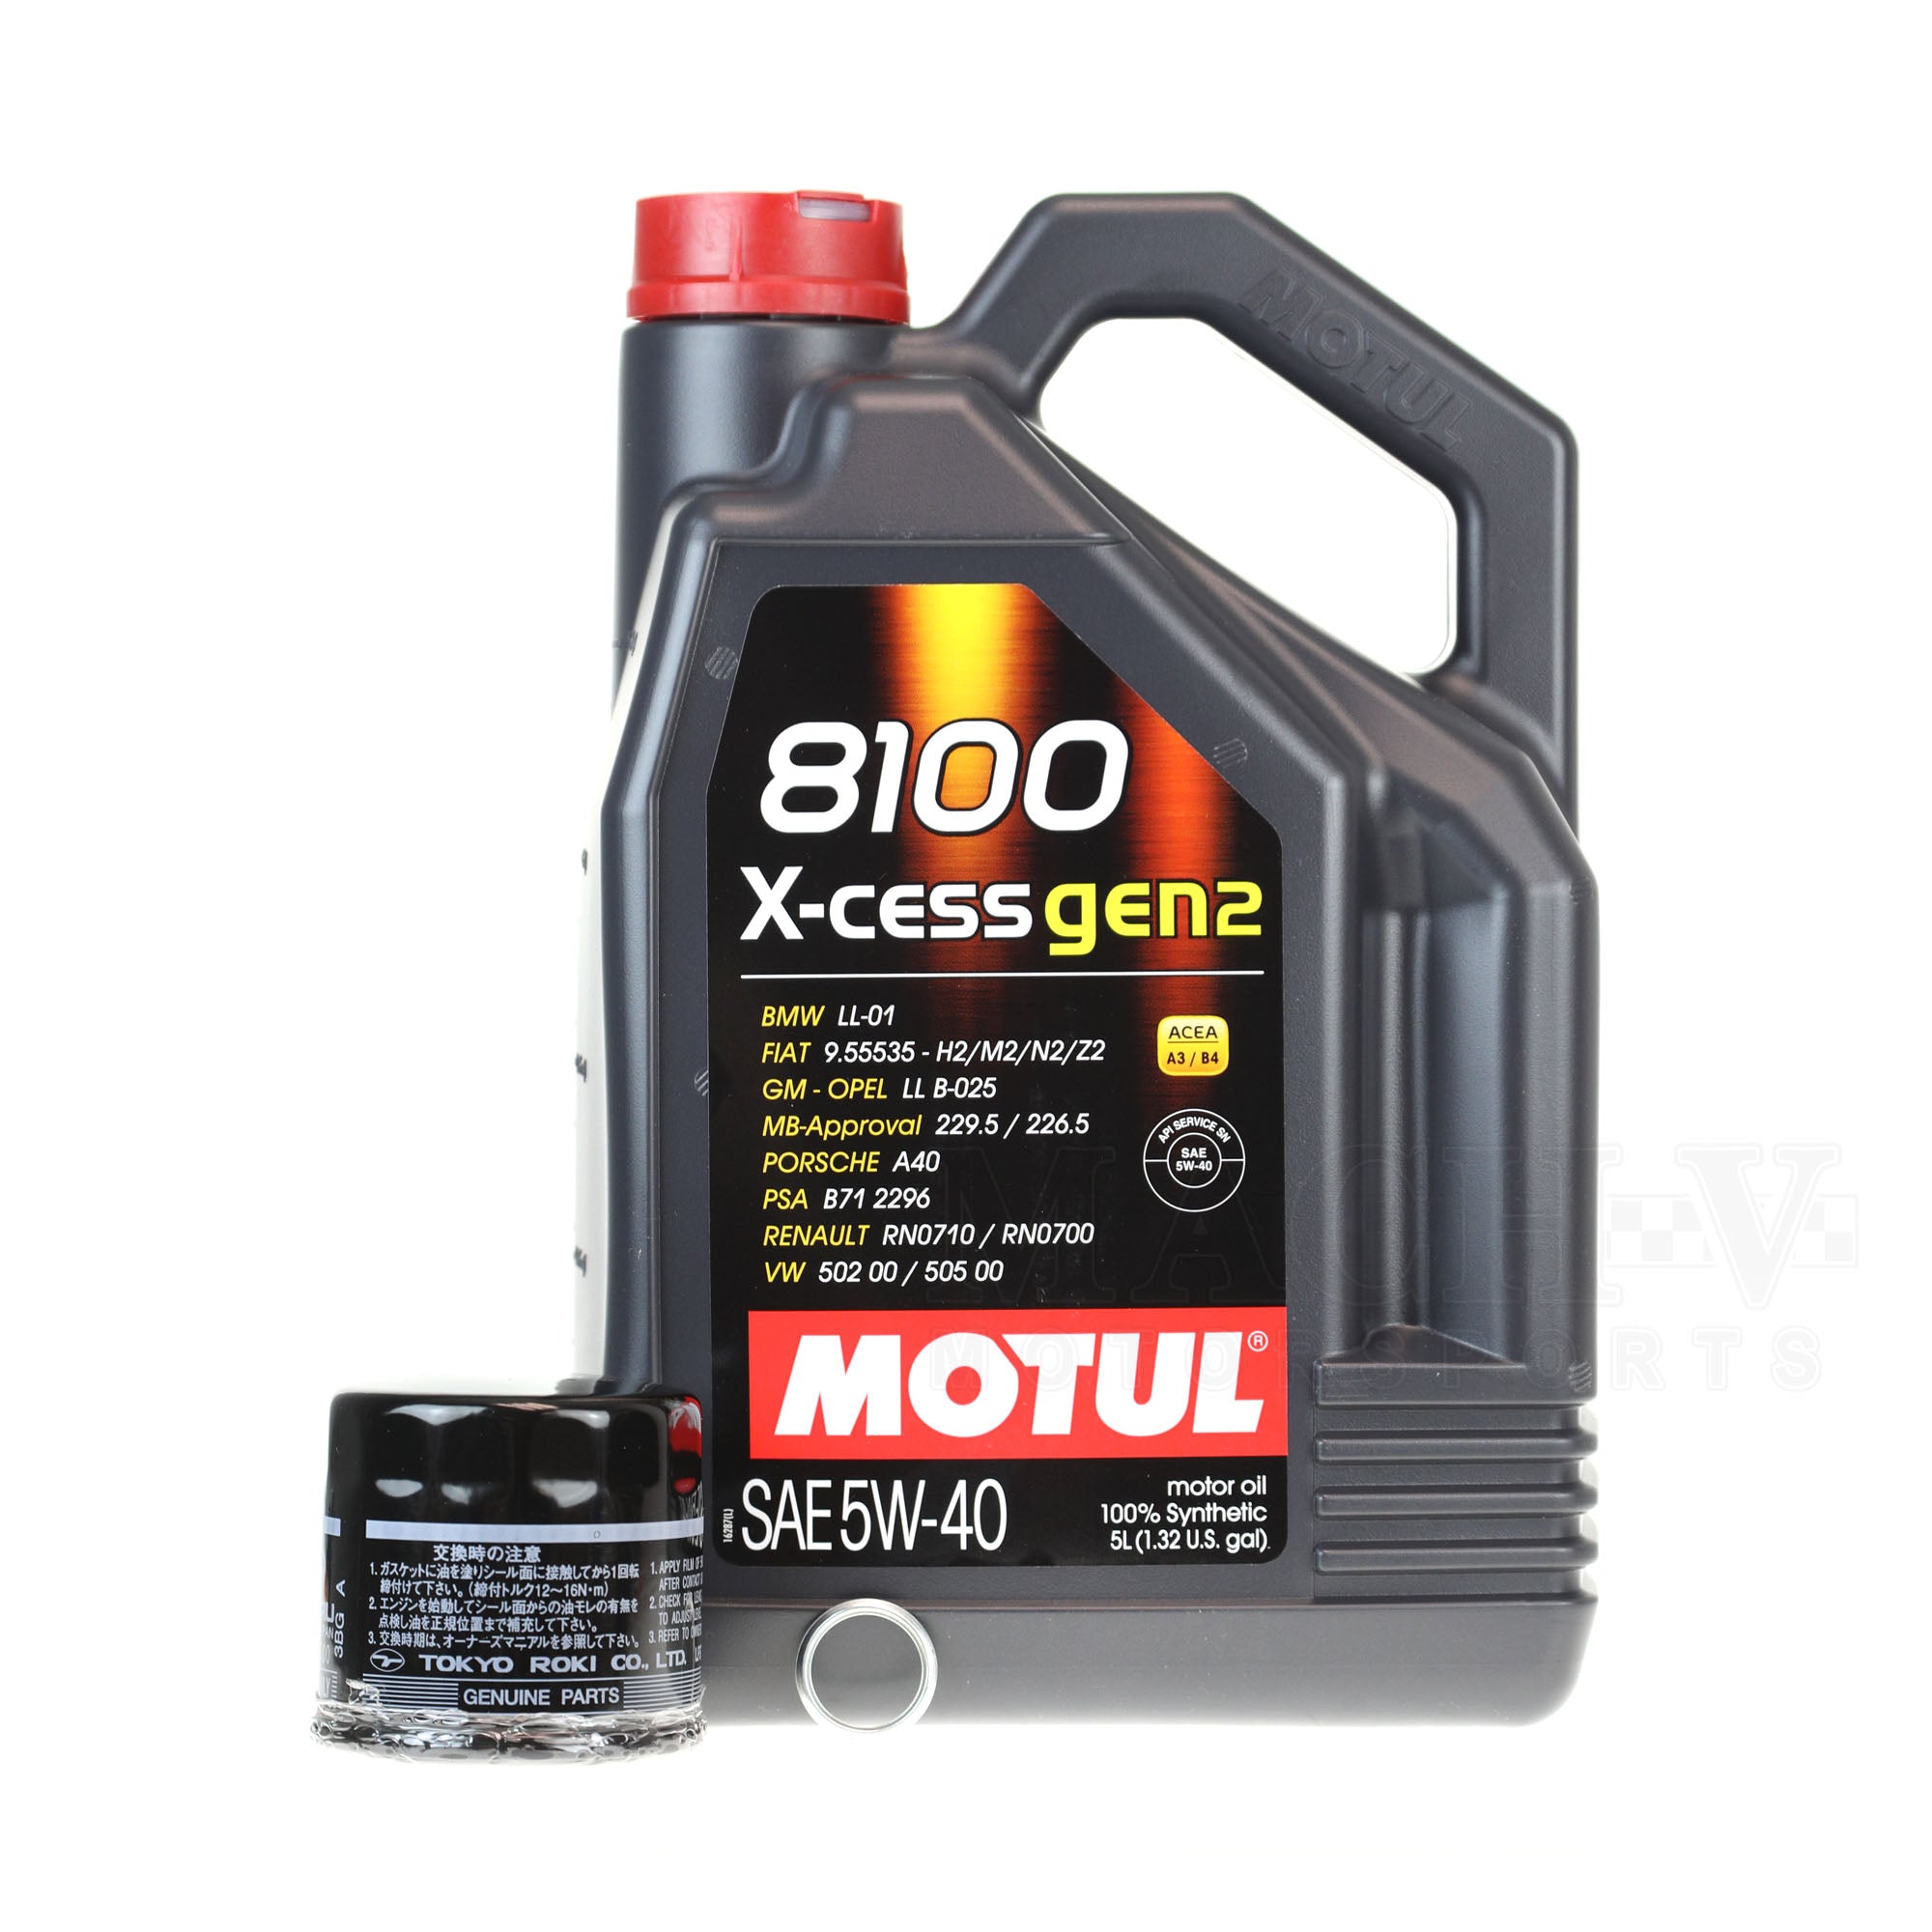 Motul 5W40 Oil Change Kit WRX/STI/Legacy GT/Forester XT